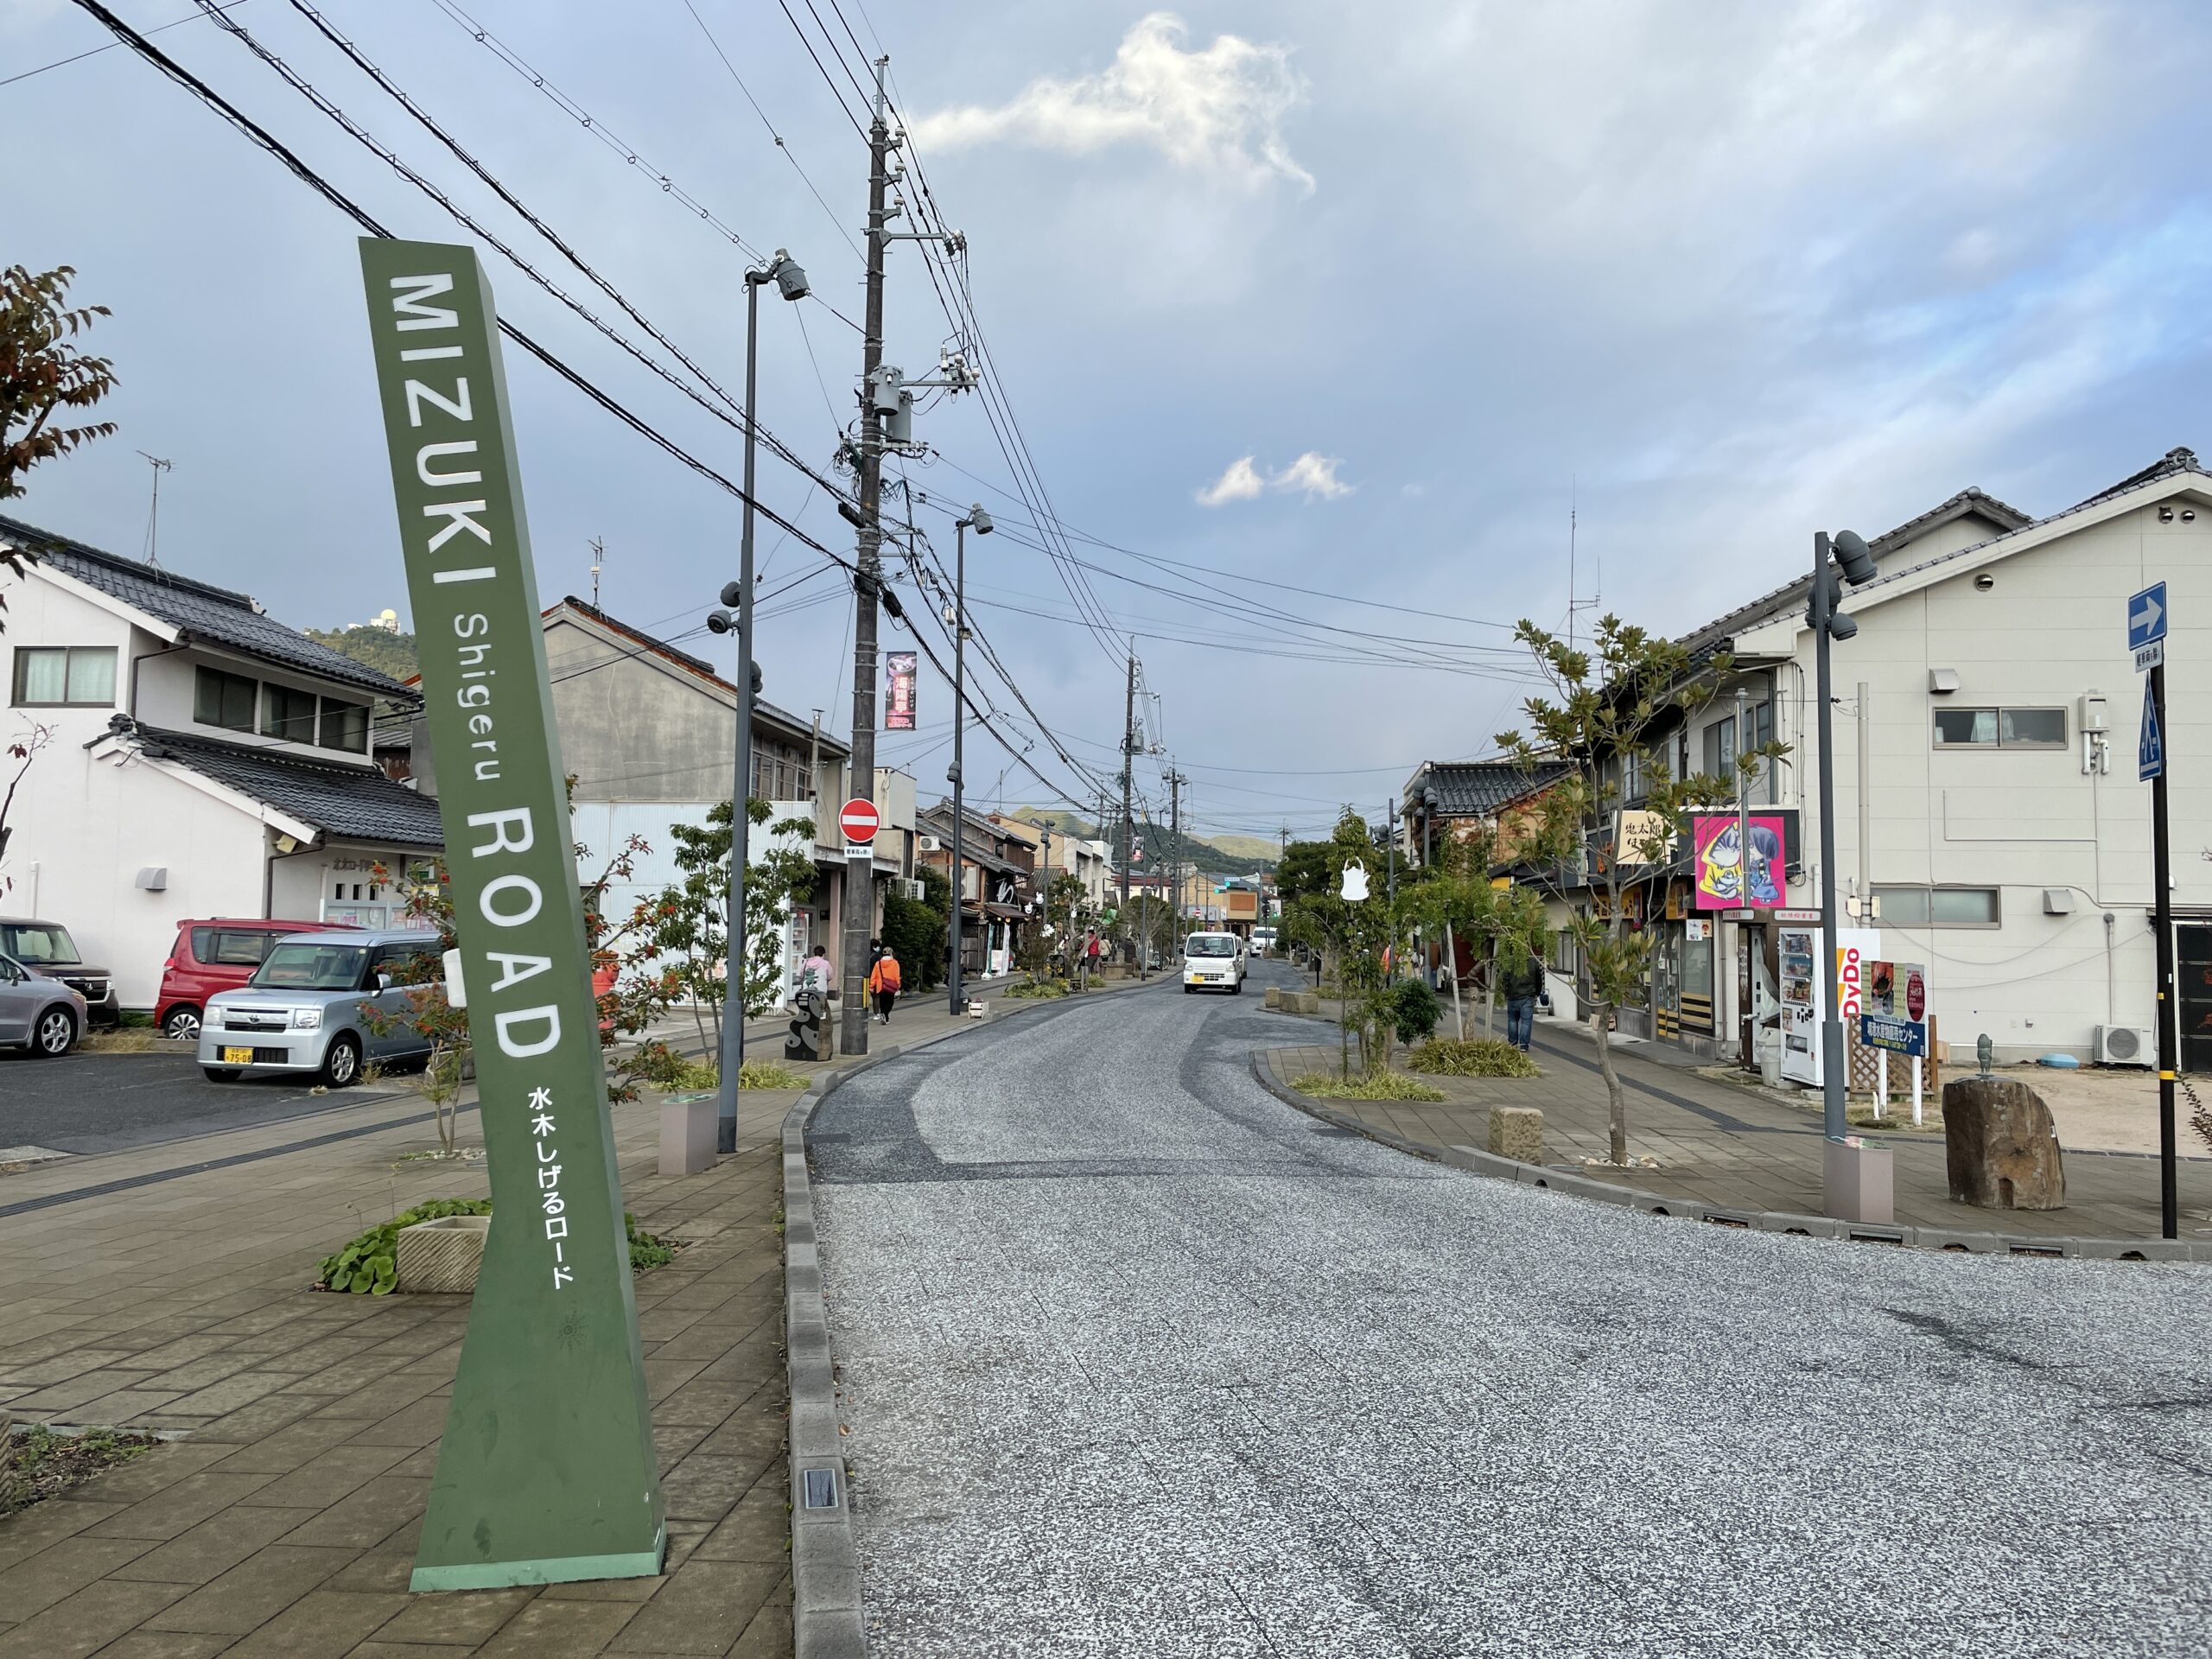 Mizuki-Shigeru-Strasse in Sakaiminato